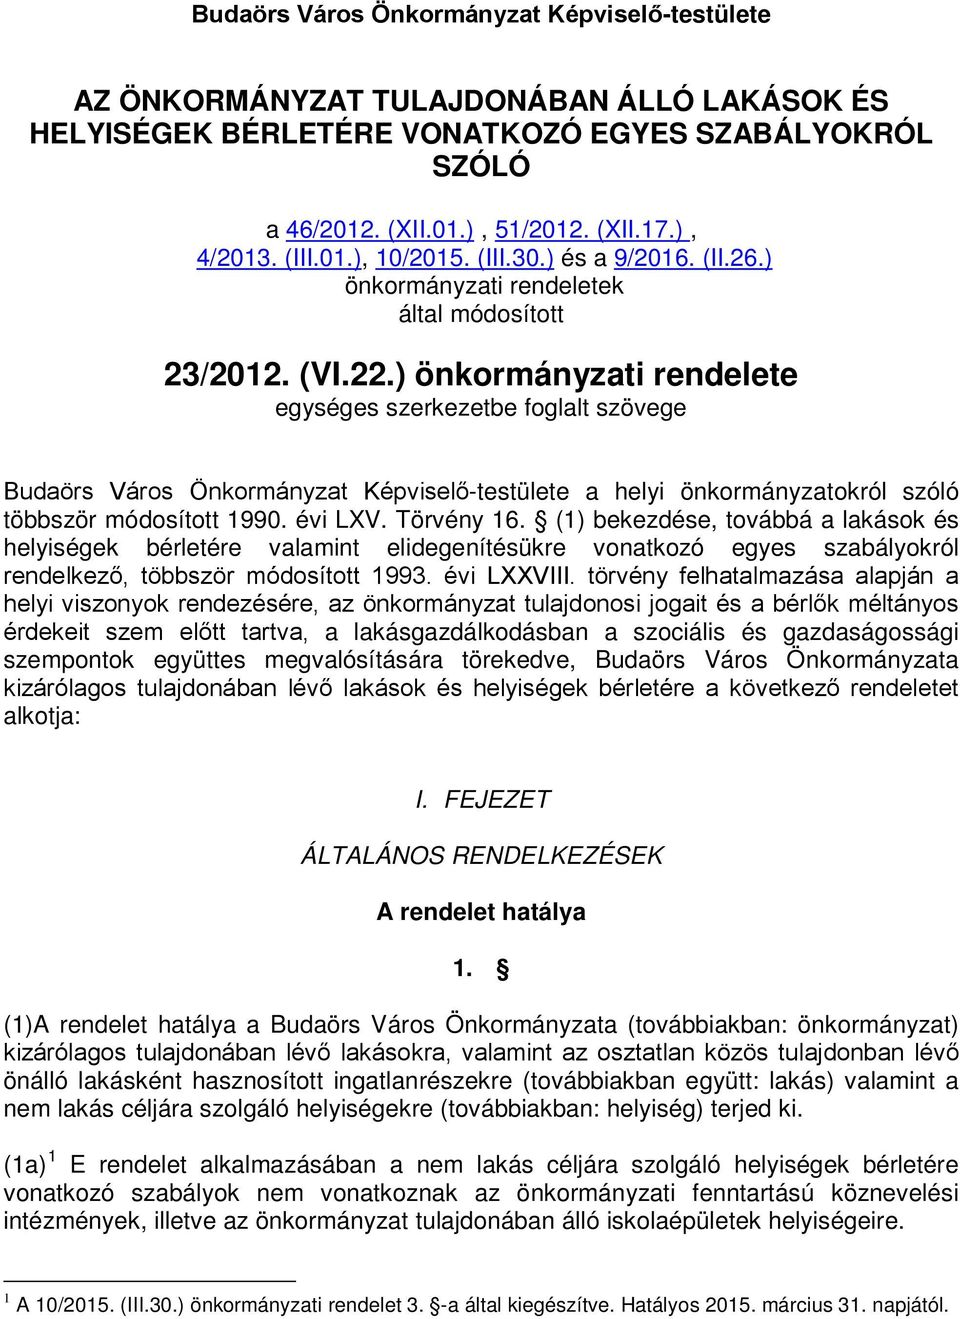 ) önkormányzati rendelete egységes szerkezetbe foglalt szövege Budaörs Város Önkormányzat Képviselő-testülete a helyi önkormányzatokról szóló többször módosított 1990. évi LXV. Törvény 16.